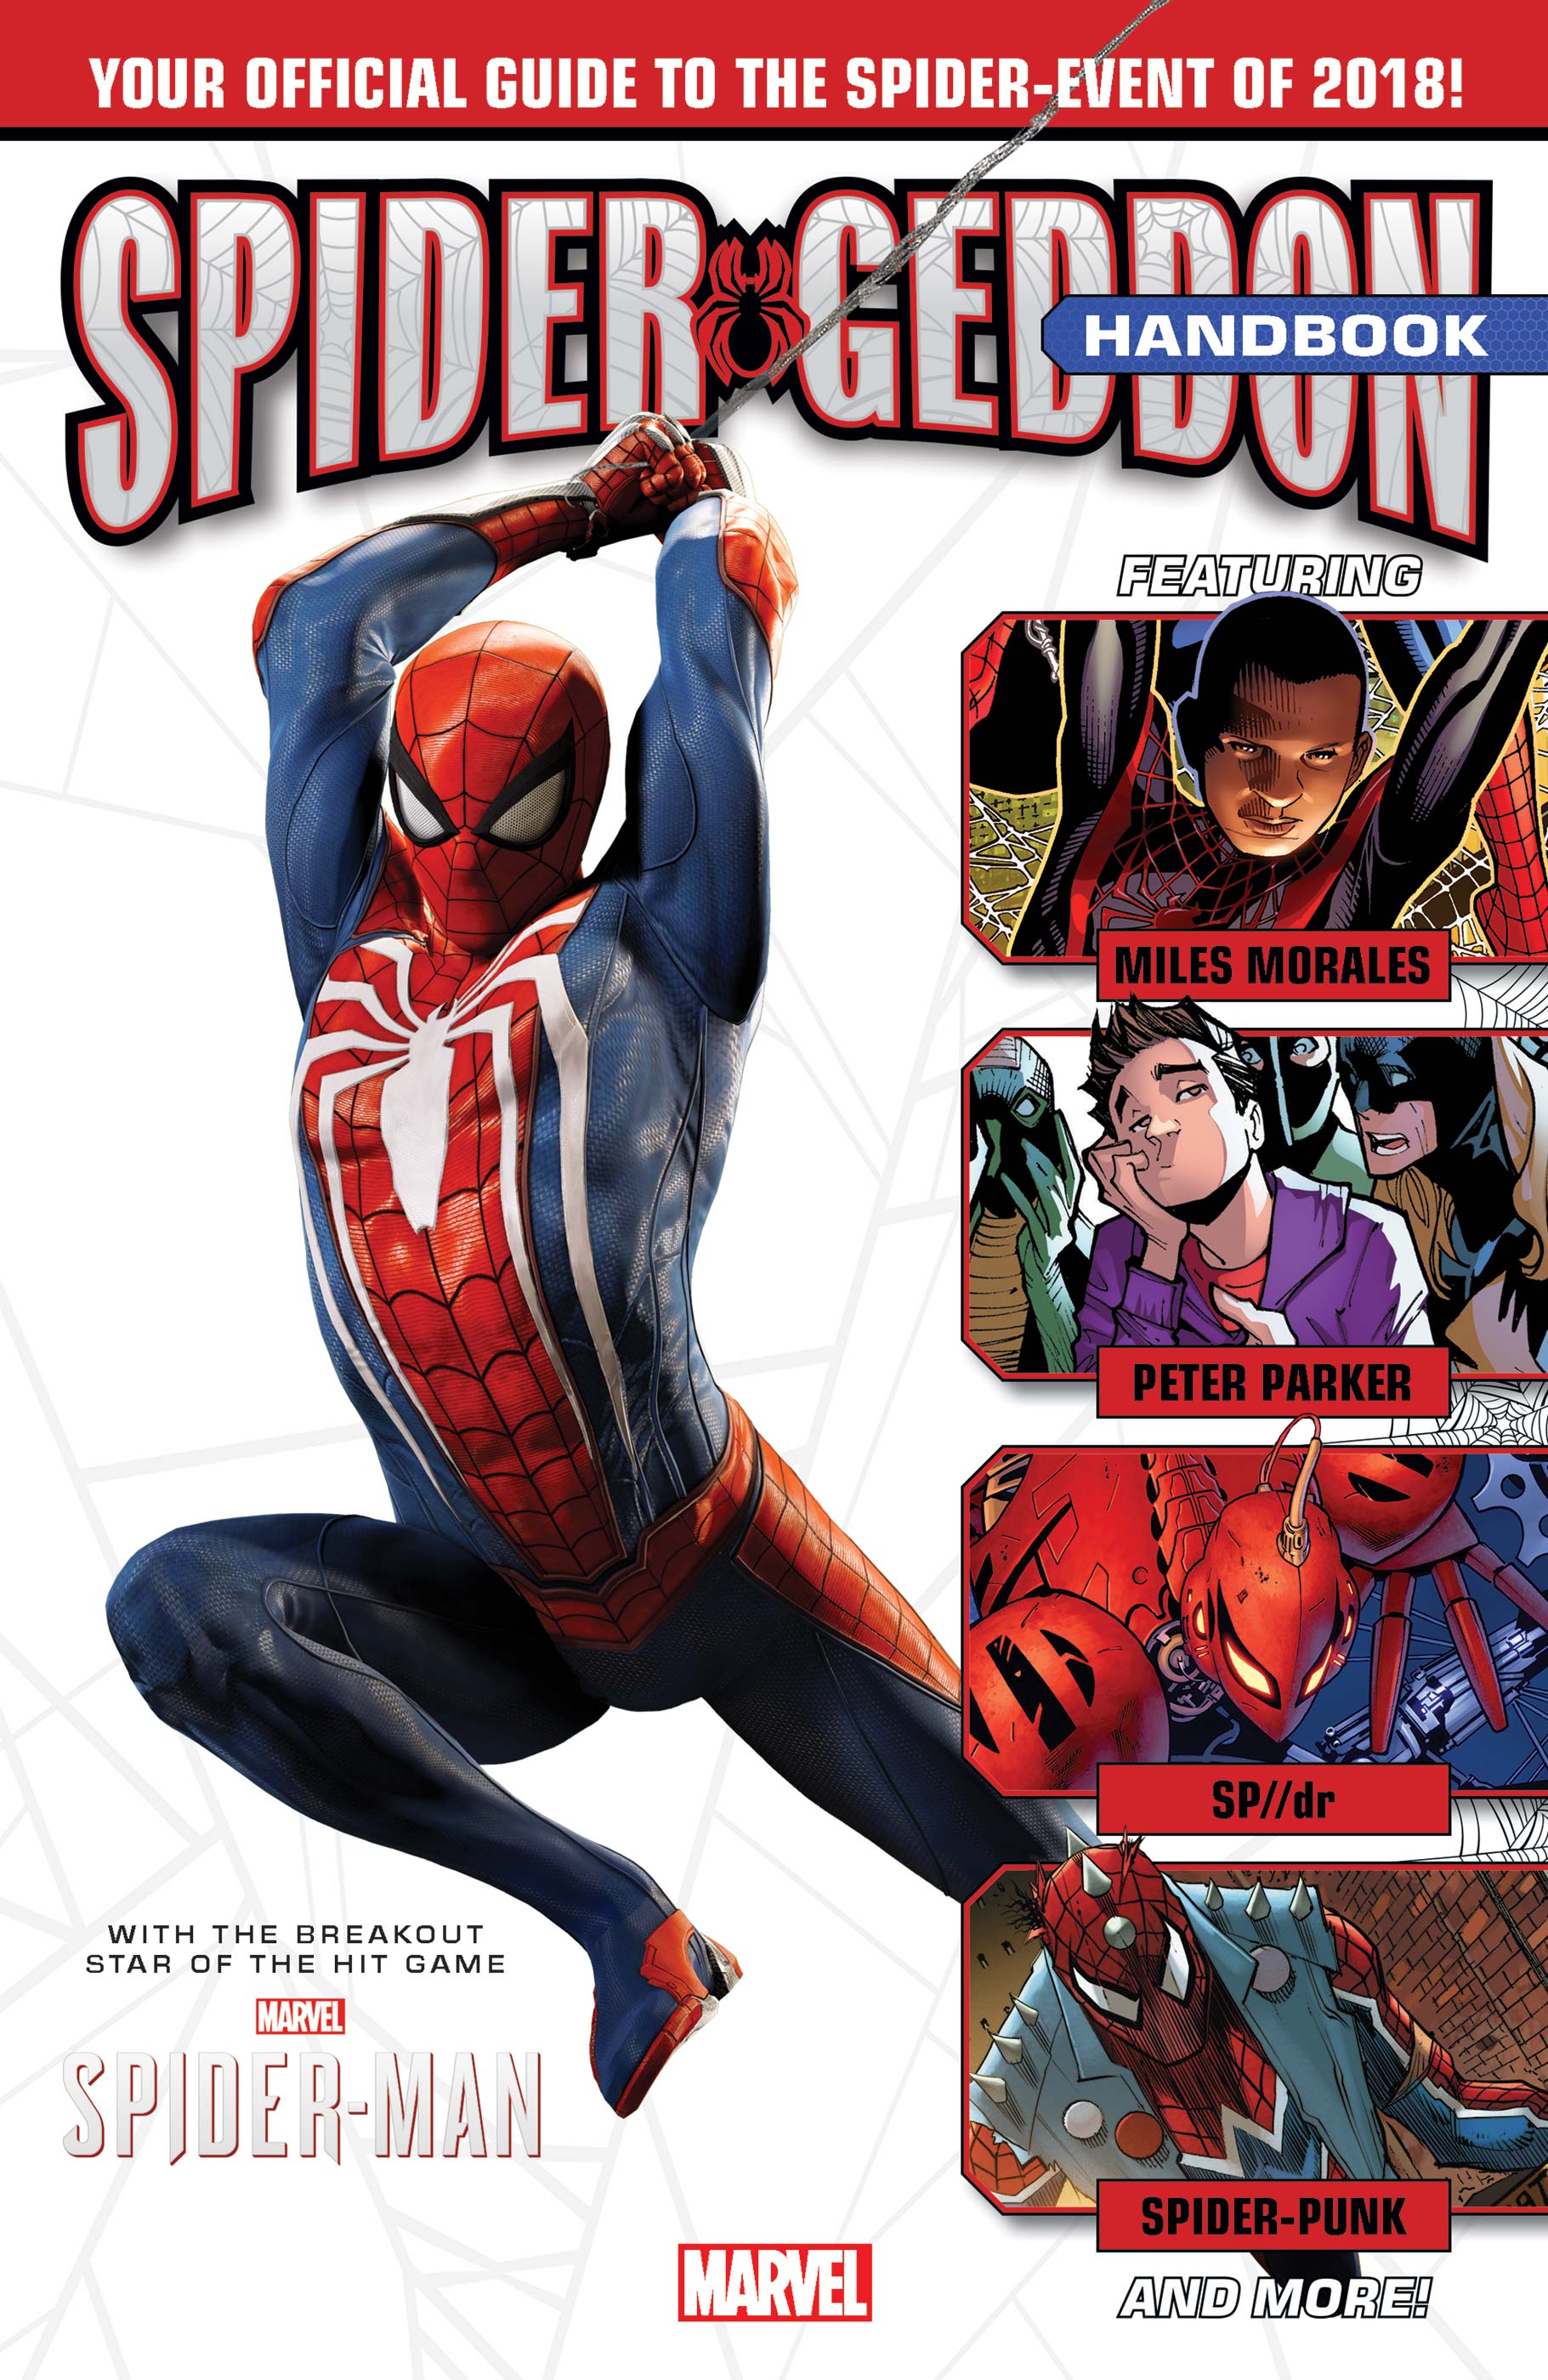 Spider-Geddon Handbook (2018) #1